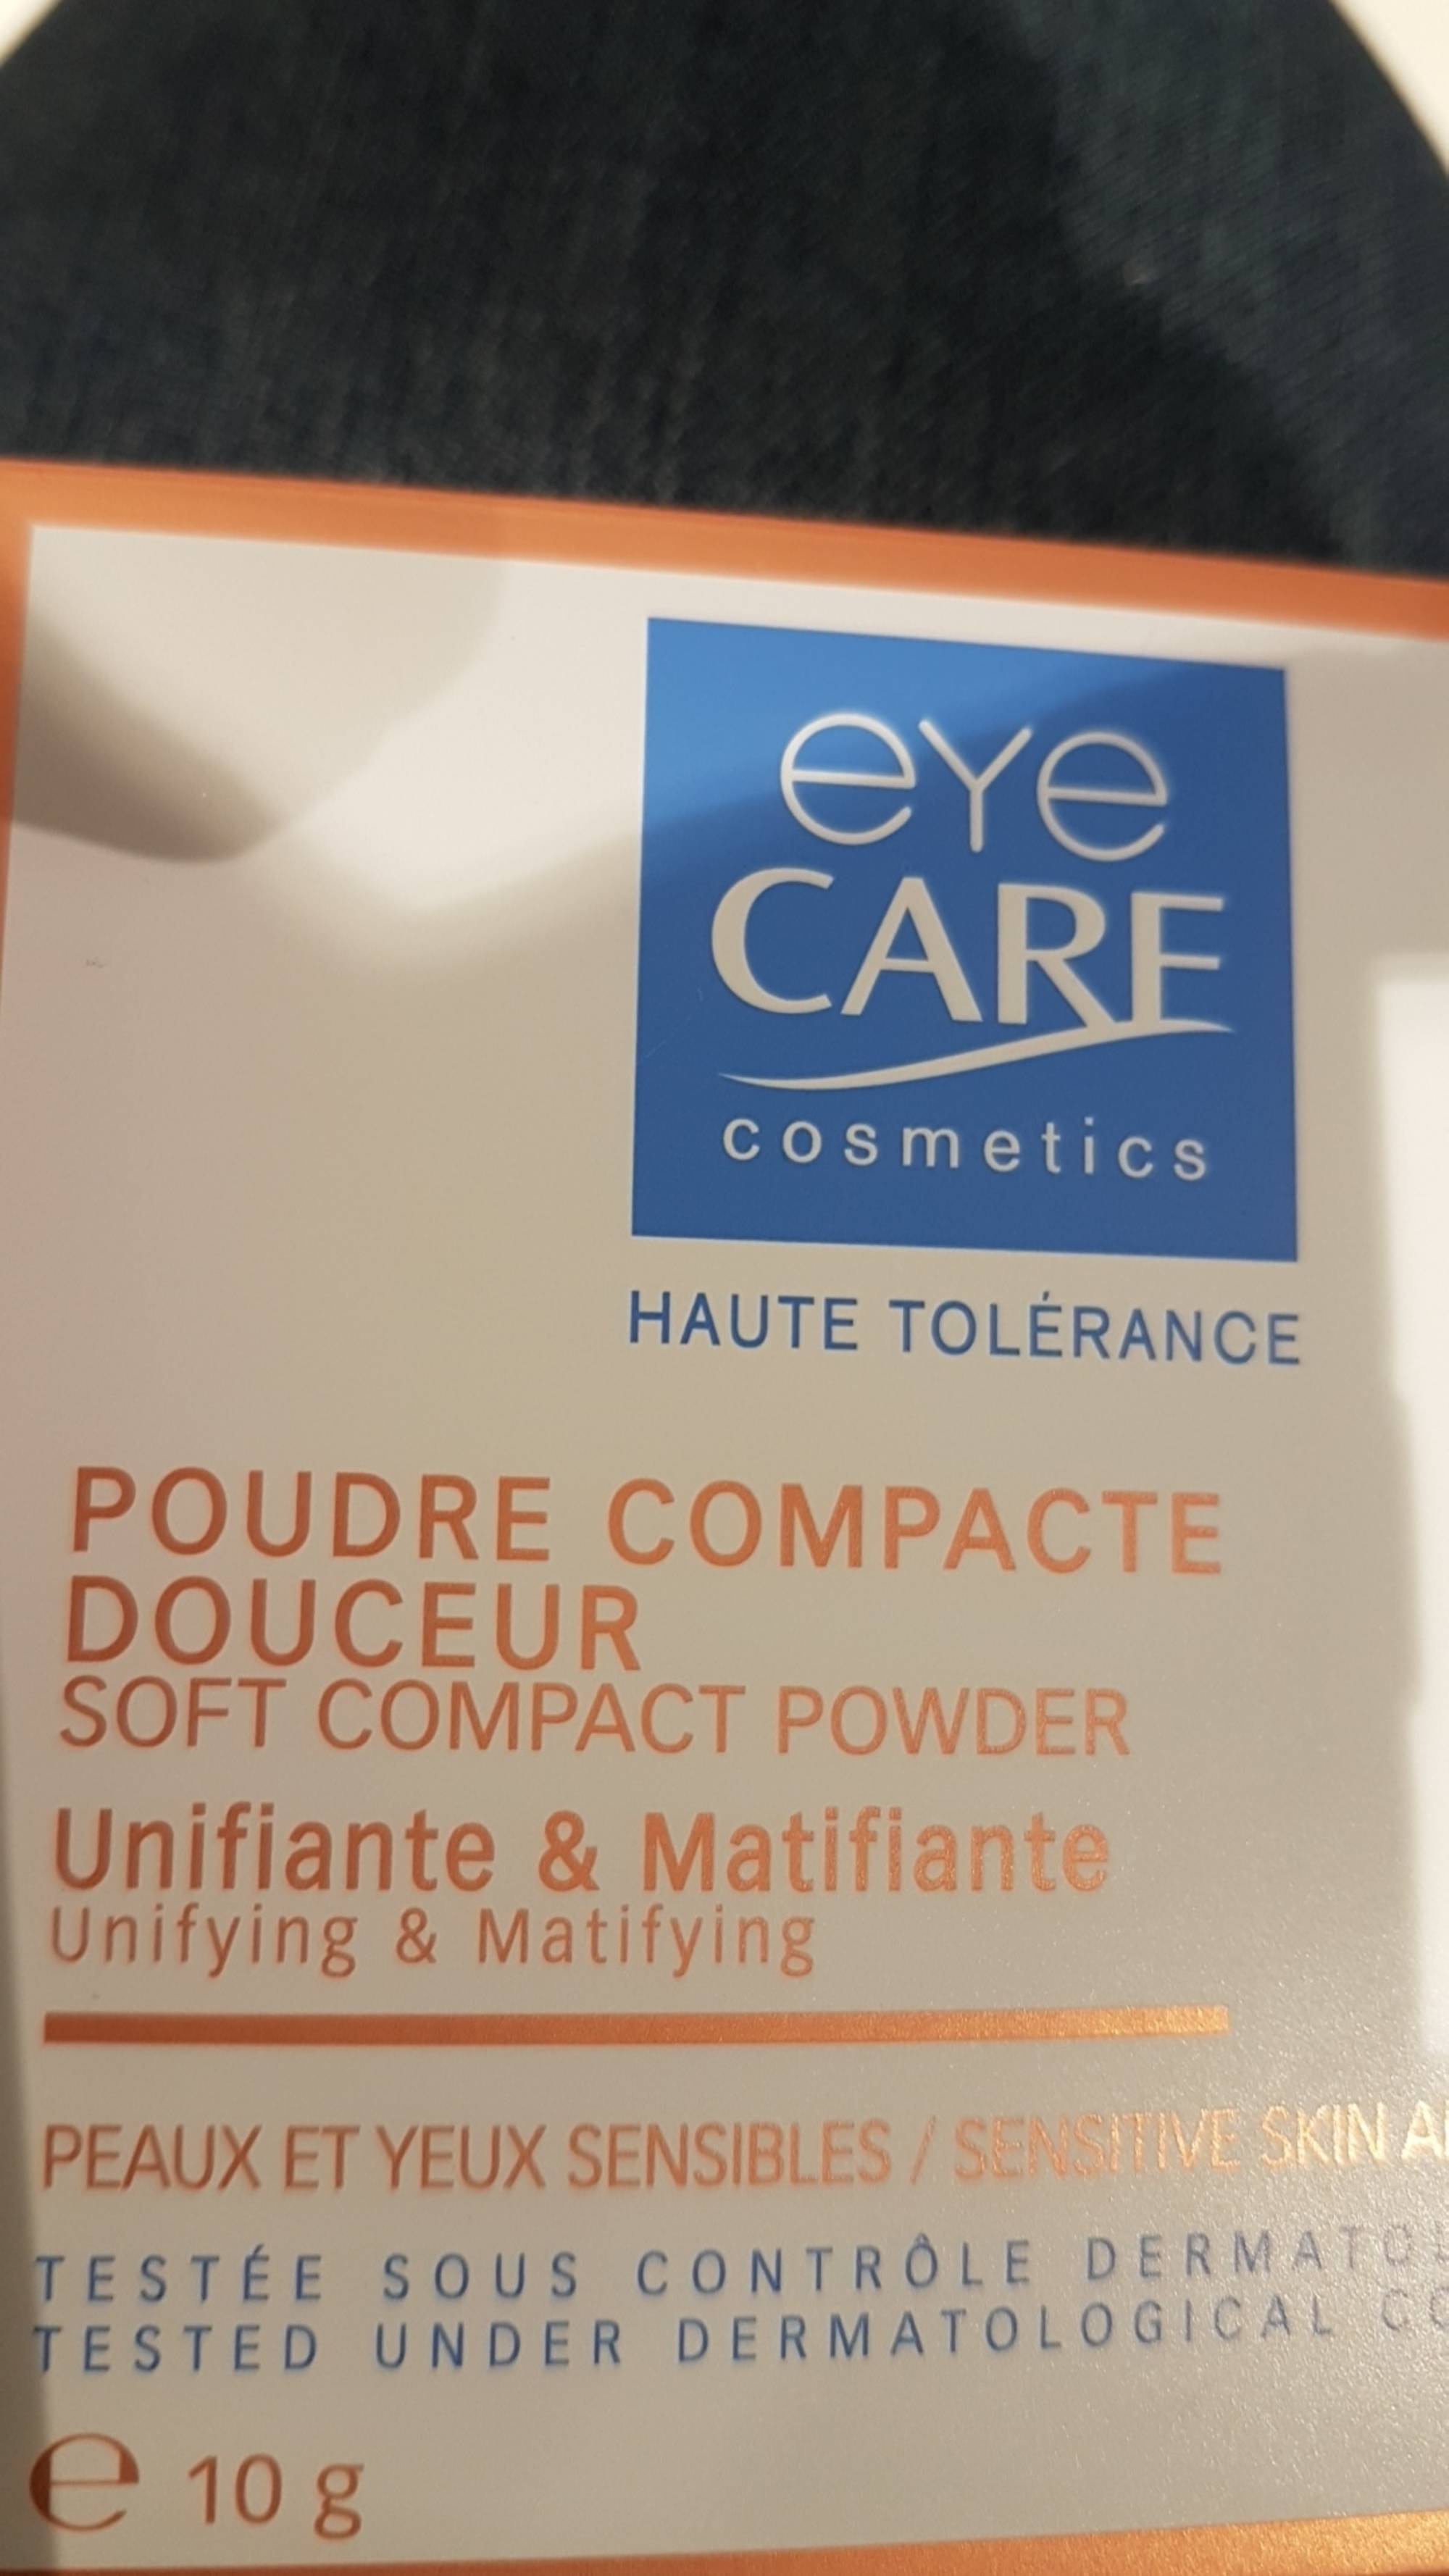 EYE CARE - Haute tolérance - Poudre compacte douceur